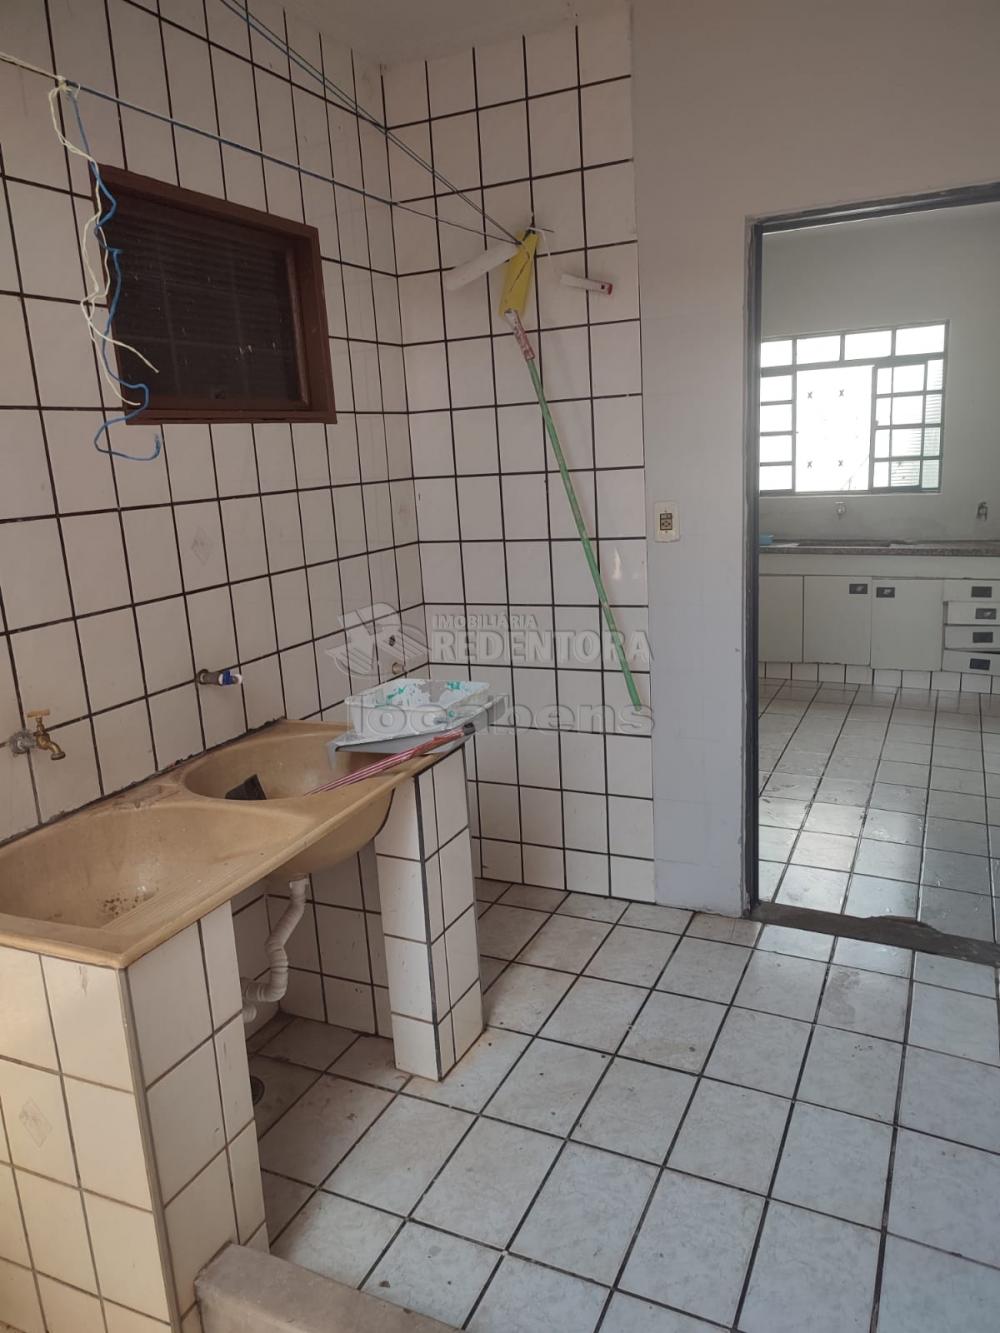 Comprar Casa / Padrão em São José do Rio Preto R$ 180.000,00 - Foto 6